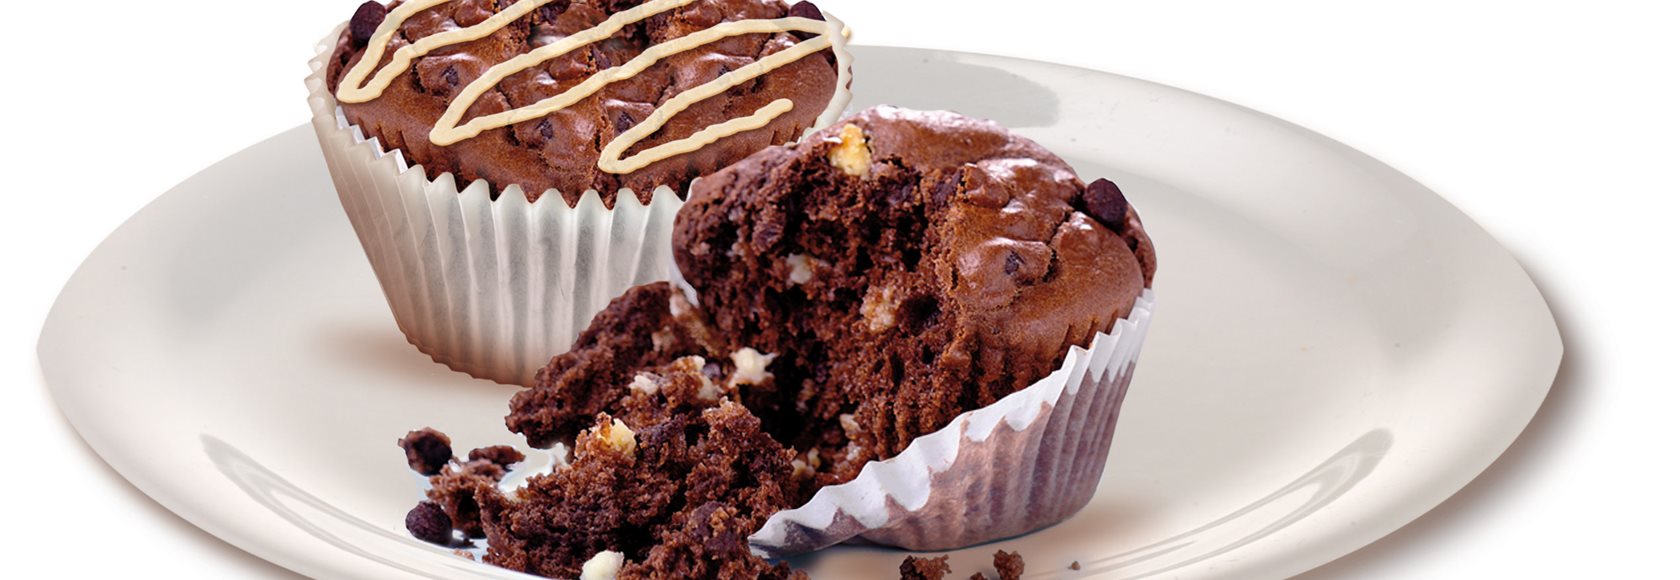 twintig Amerika Uitstekend Duo Chocolade Muffins Recept | Dr. Oetker